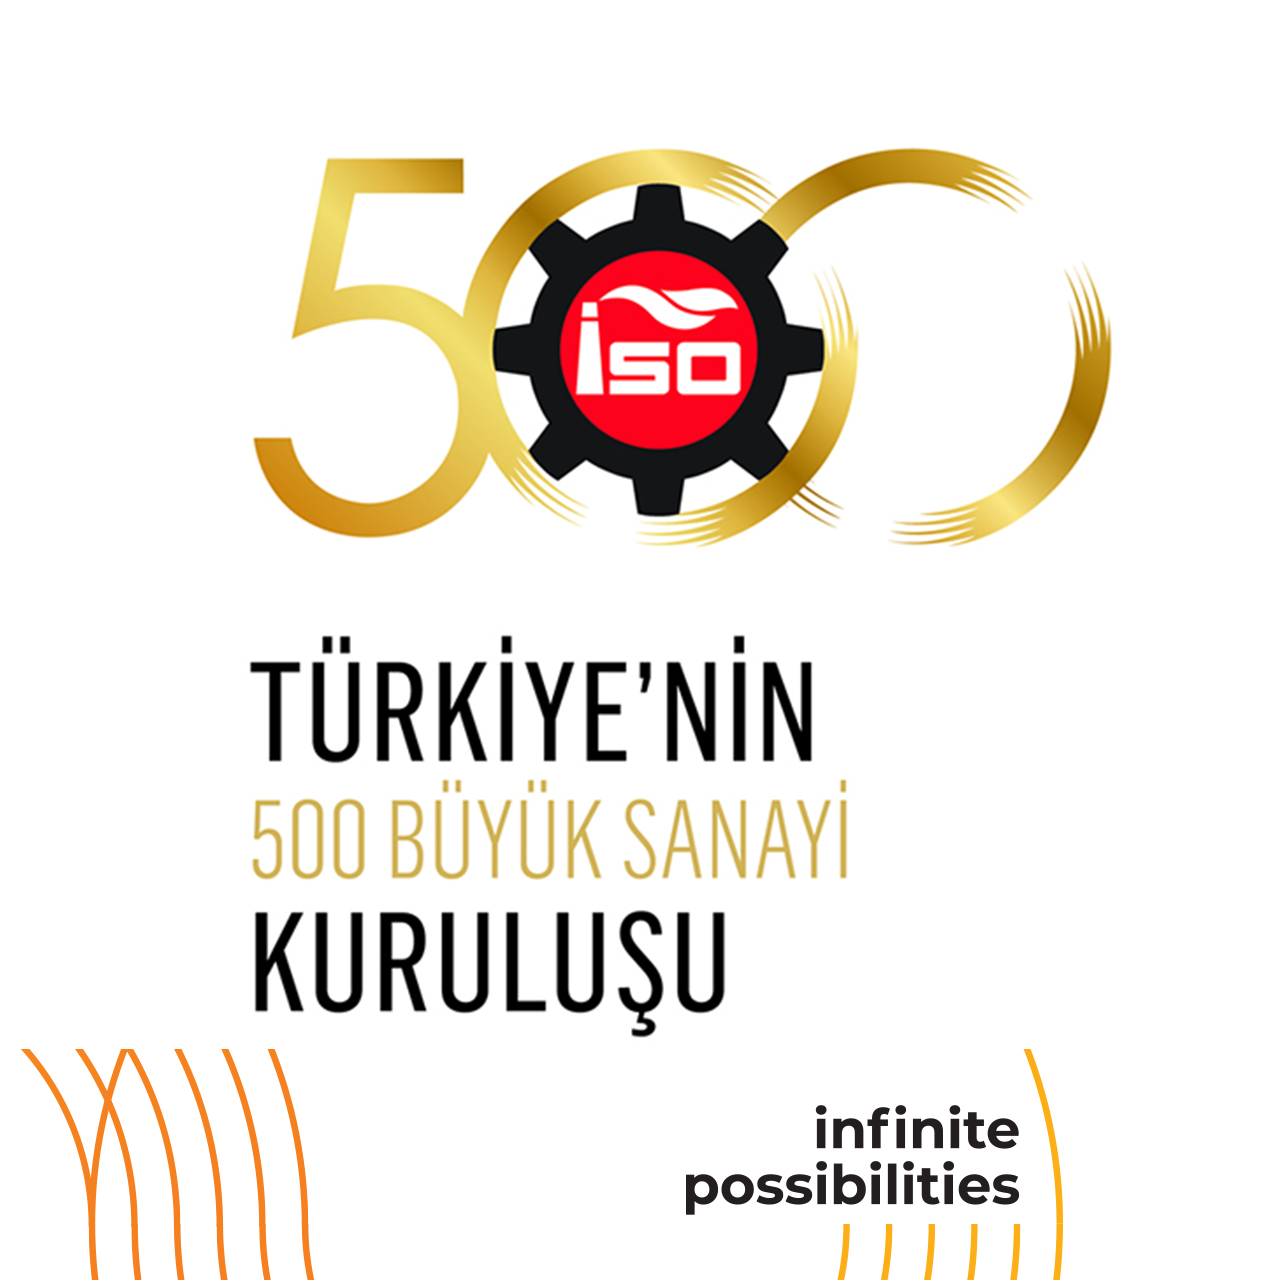 As Özyaşar Tel, we are in the ISO 500